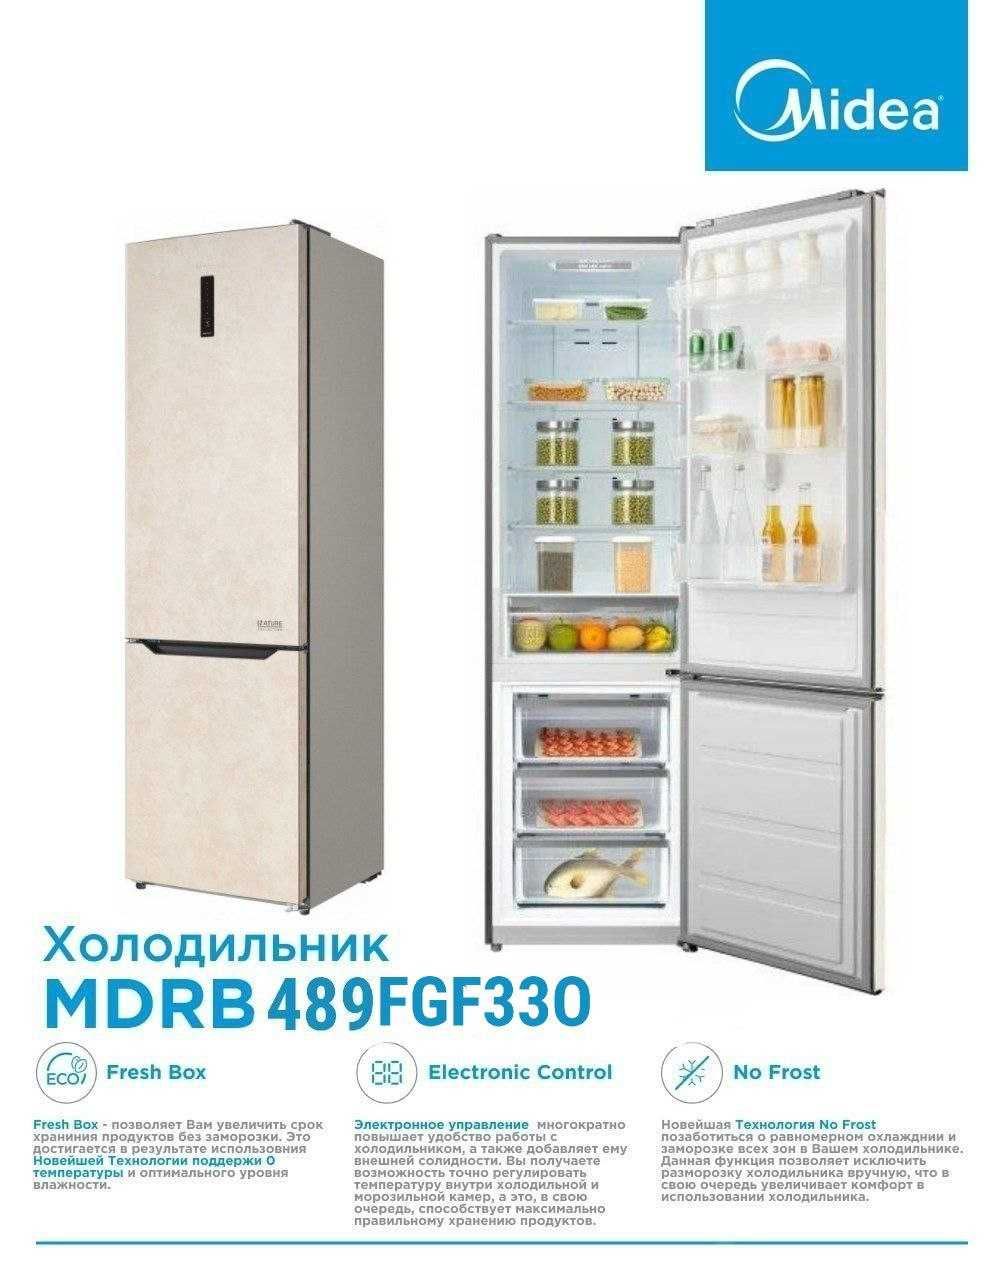 Электронный или механический холодильник